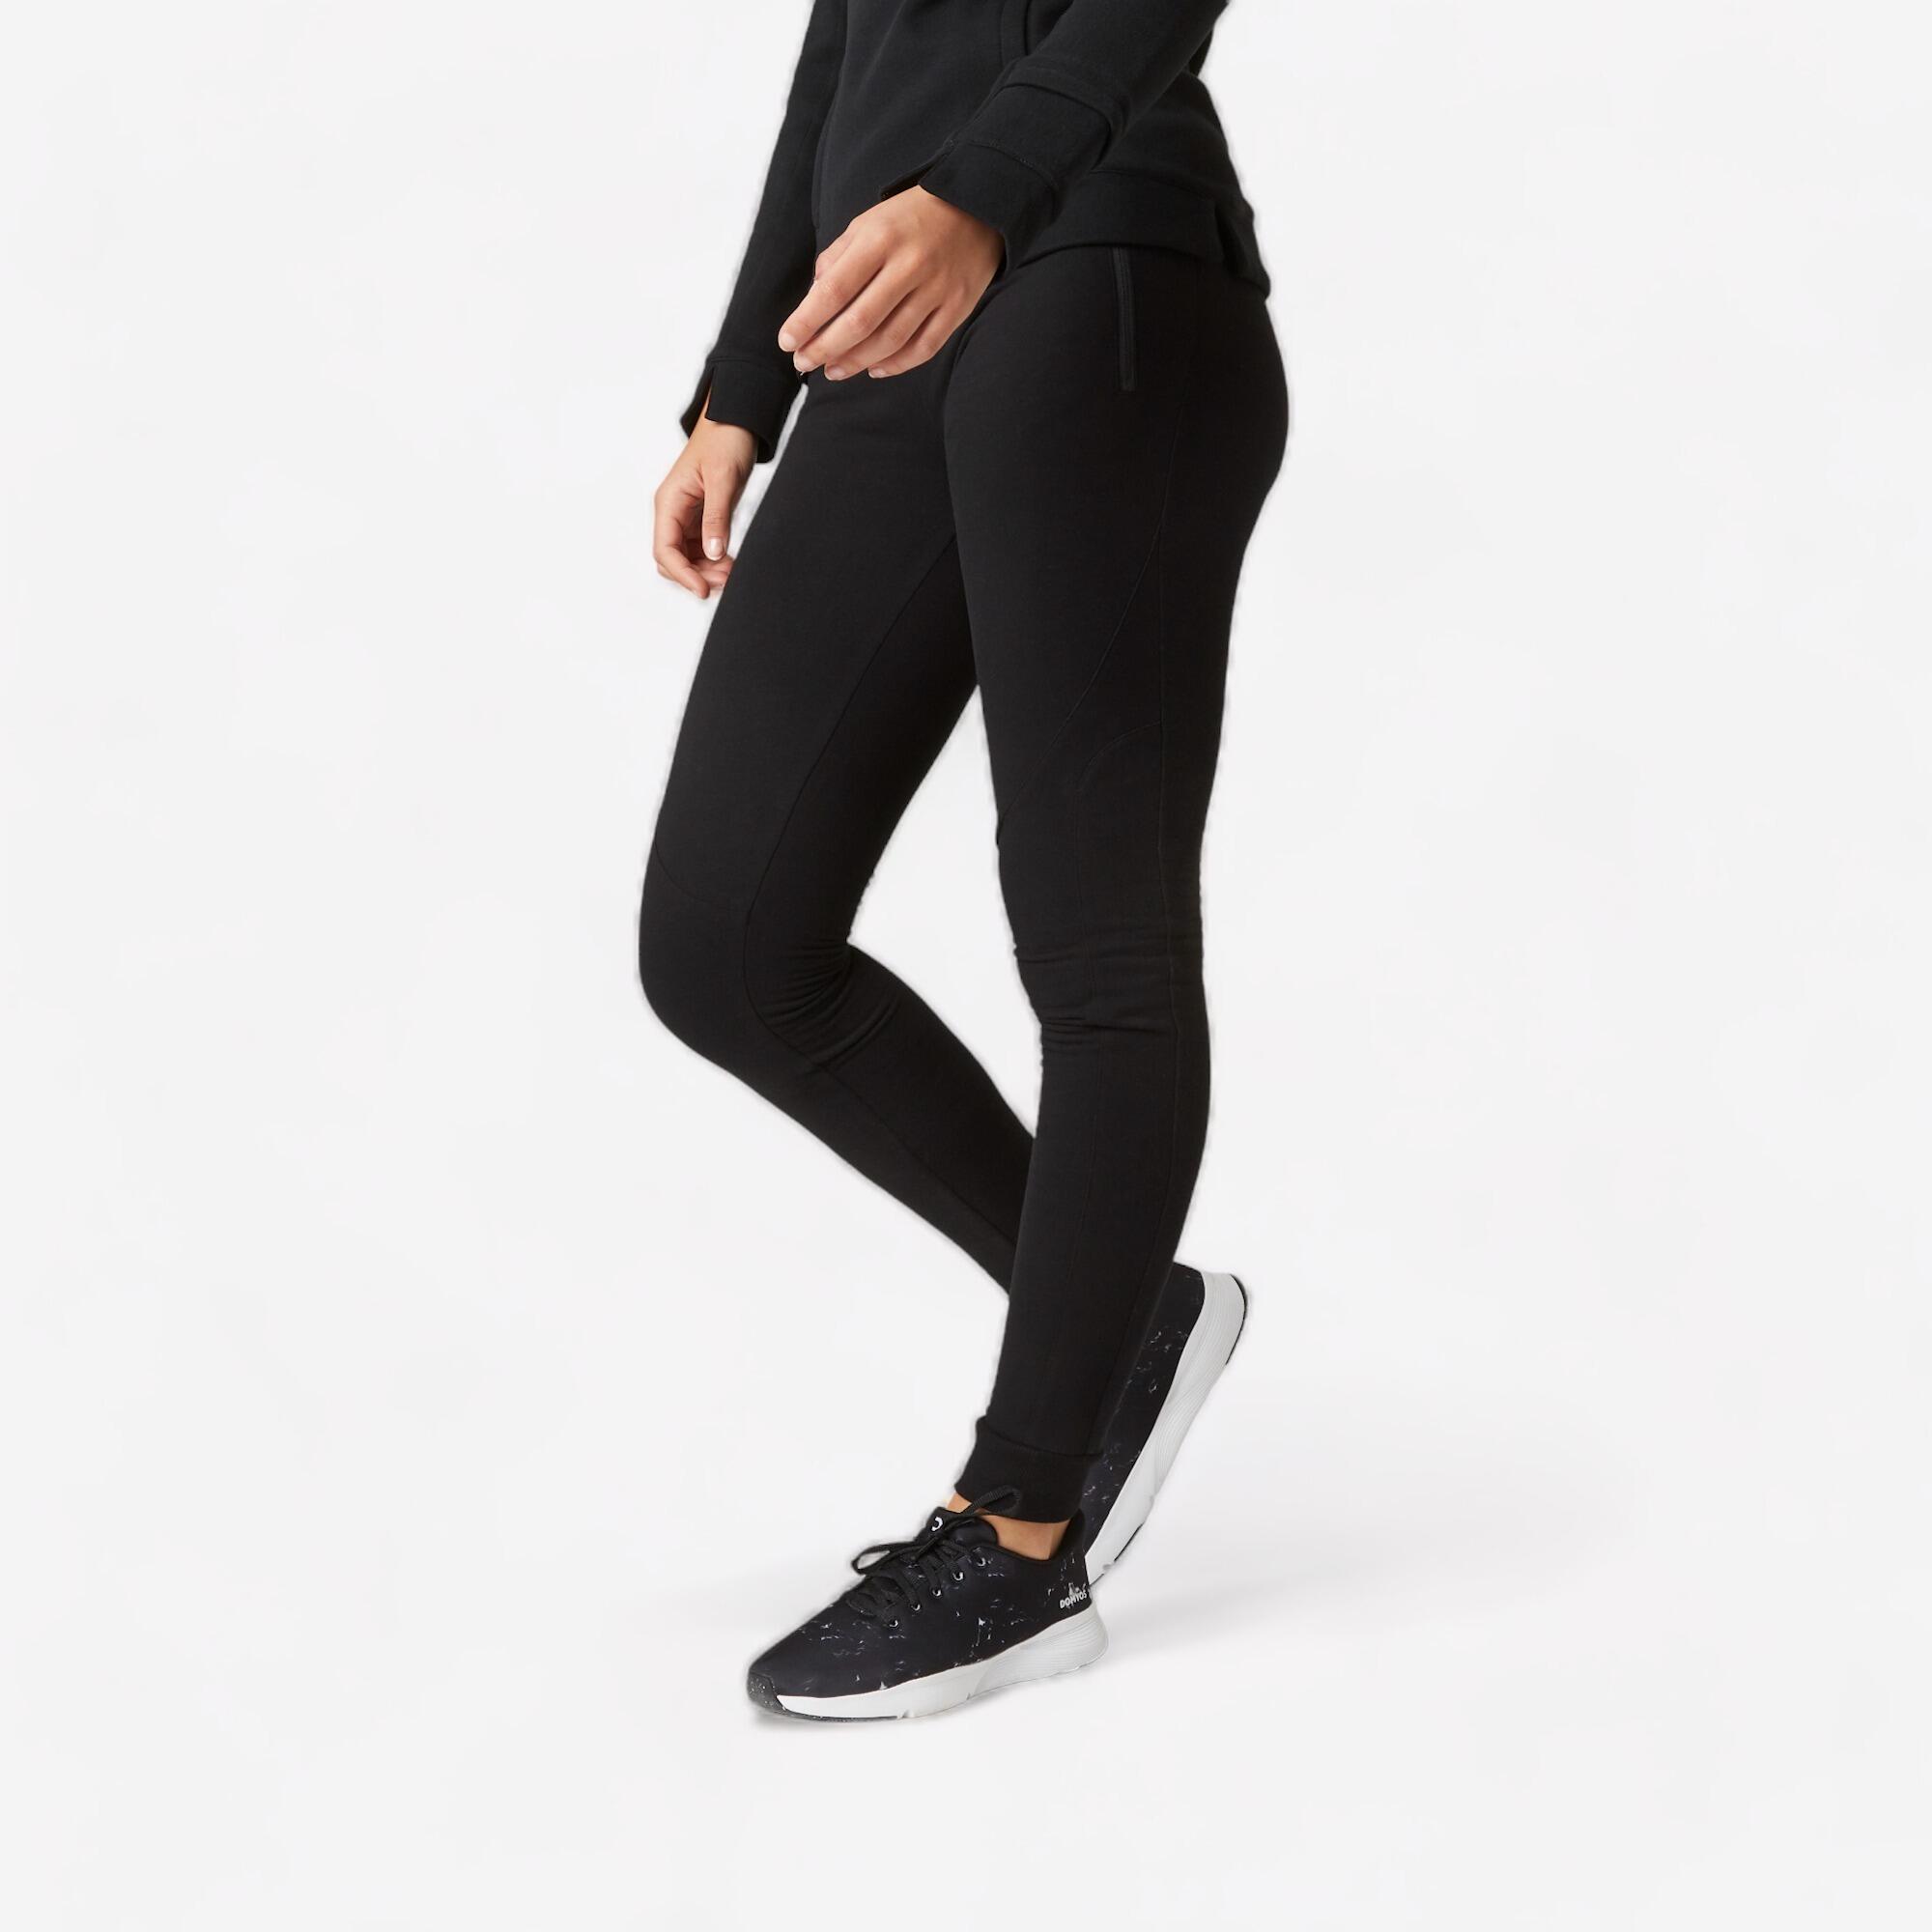 Alan Jones Clothing Women's Slim Fit Trackpants  (WM19-JOG-ST01-NAVY-XXL_Navy Blue_XX-Large),Size 2XL